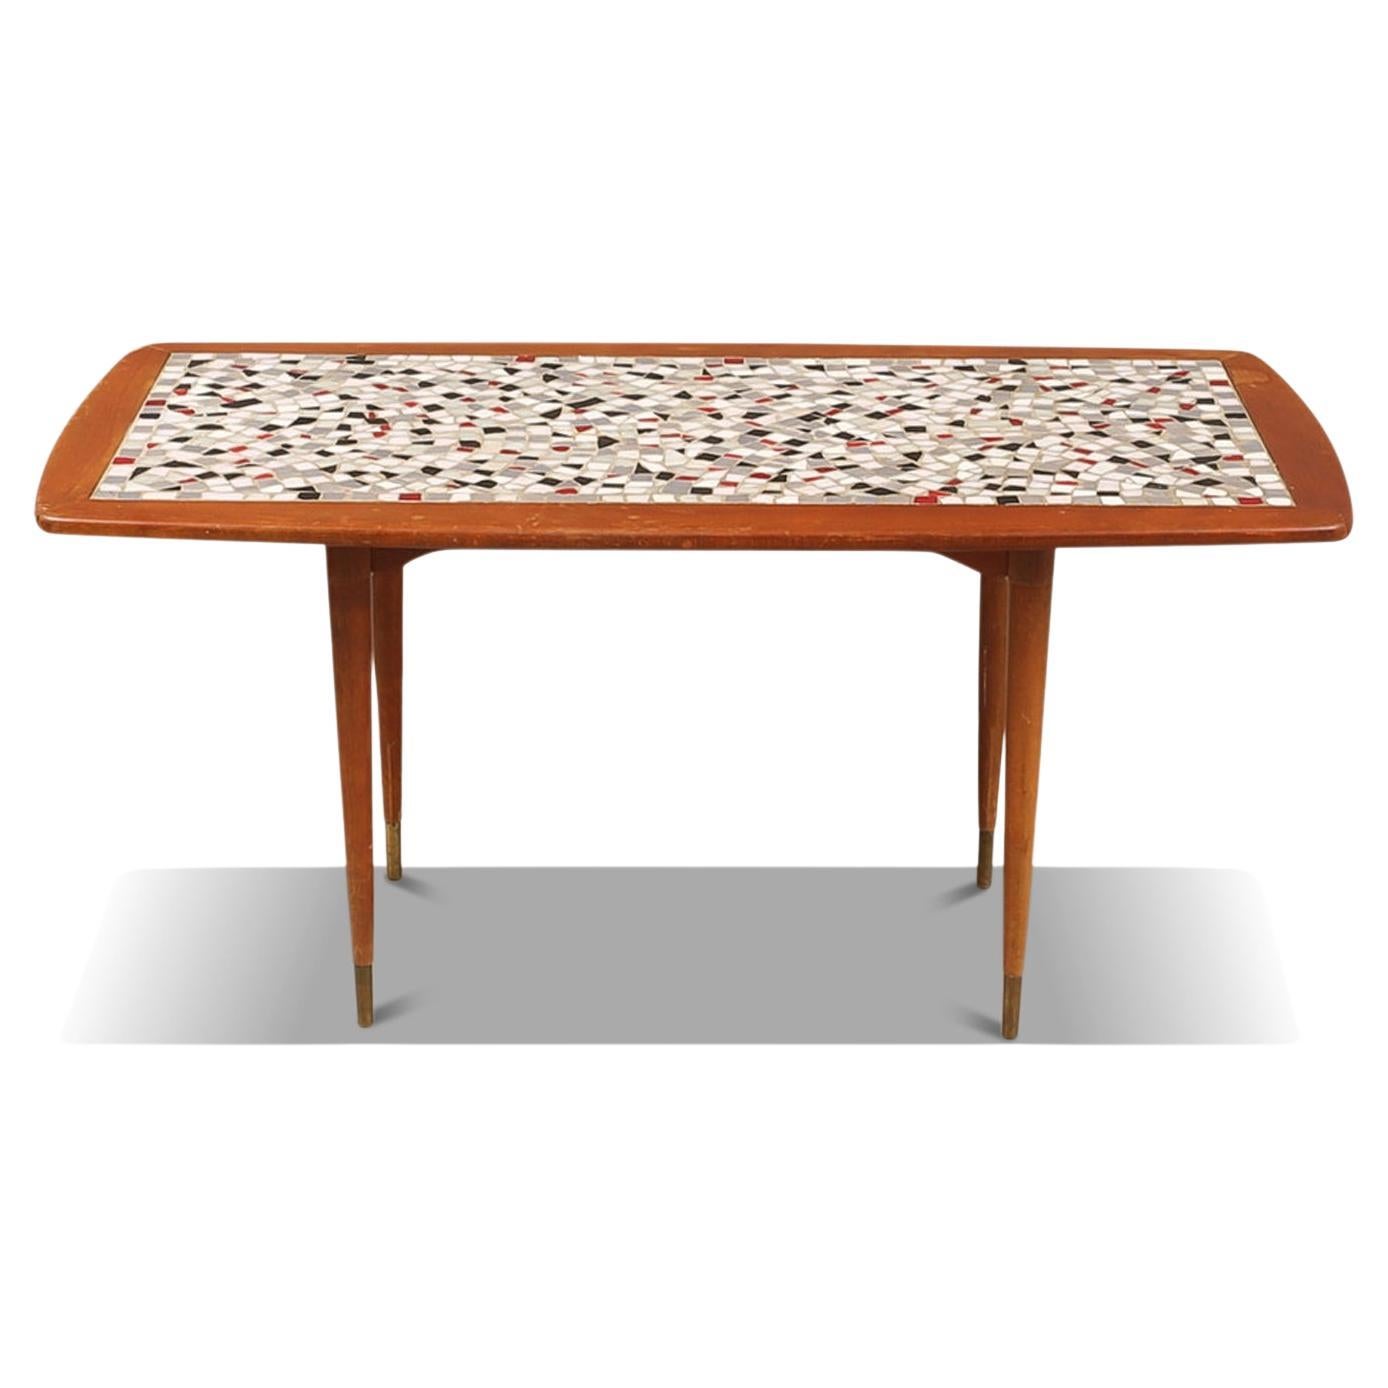 Mosaïque suédoise moderne + table basse en hêtre